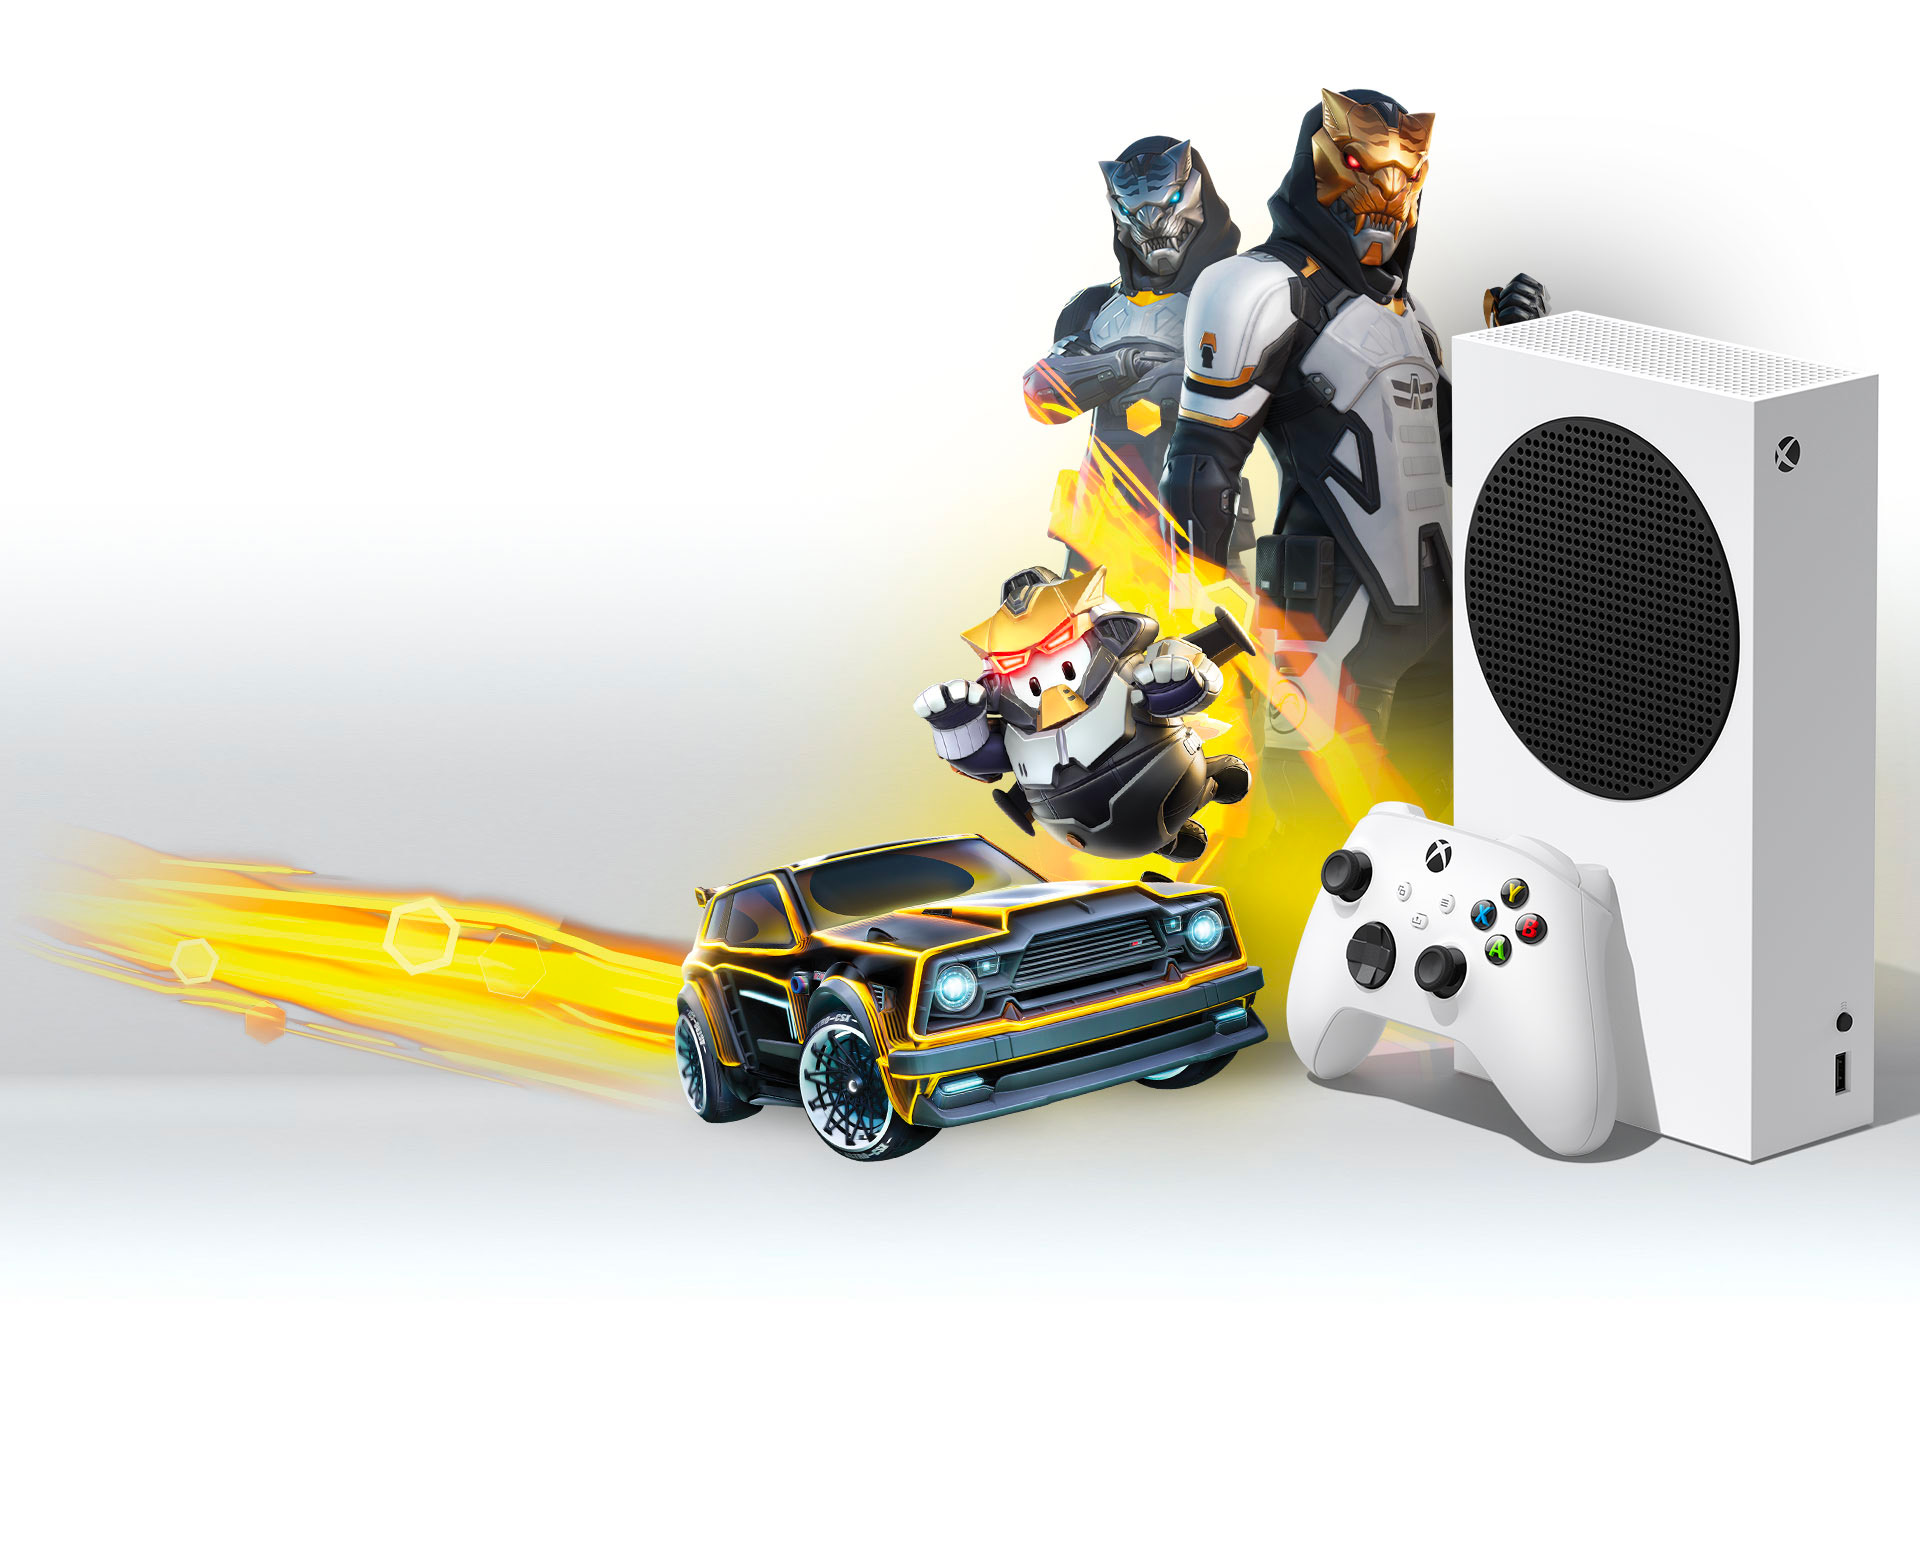 Una Xbox Series S frente a los contenidos del Paquete Gilded Hunter, incluidos Fortnite, Rocket League y Fall Guys.